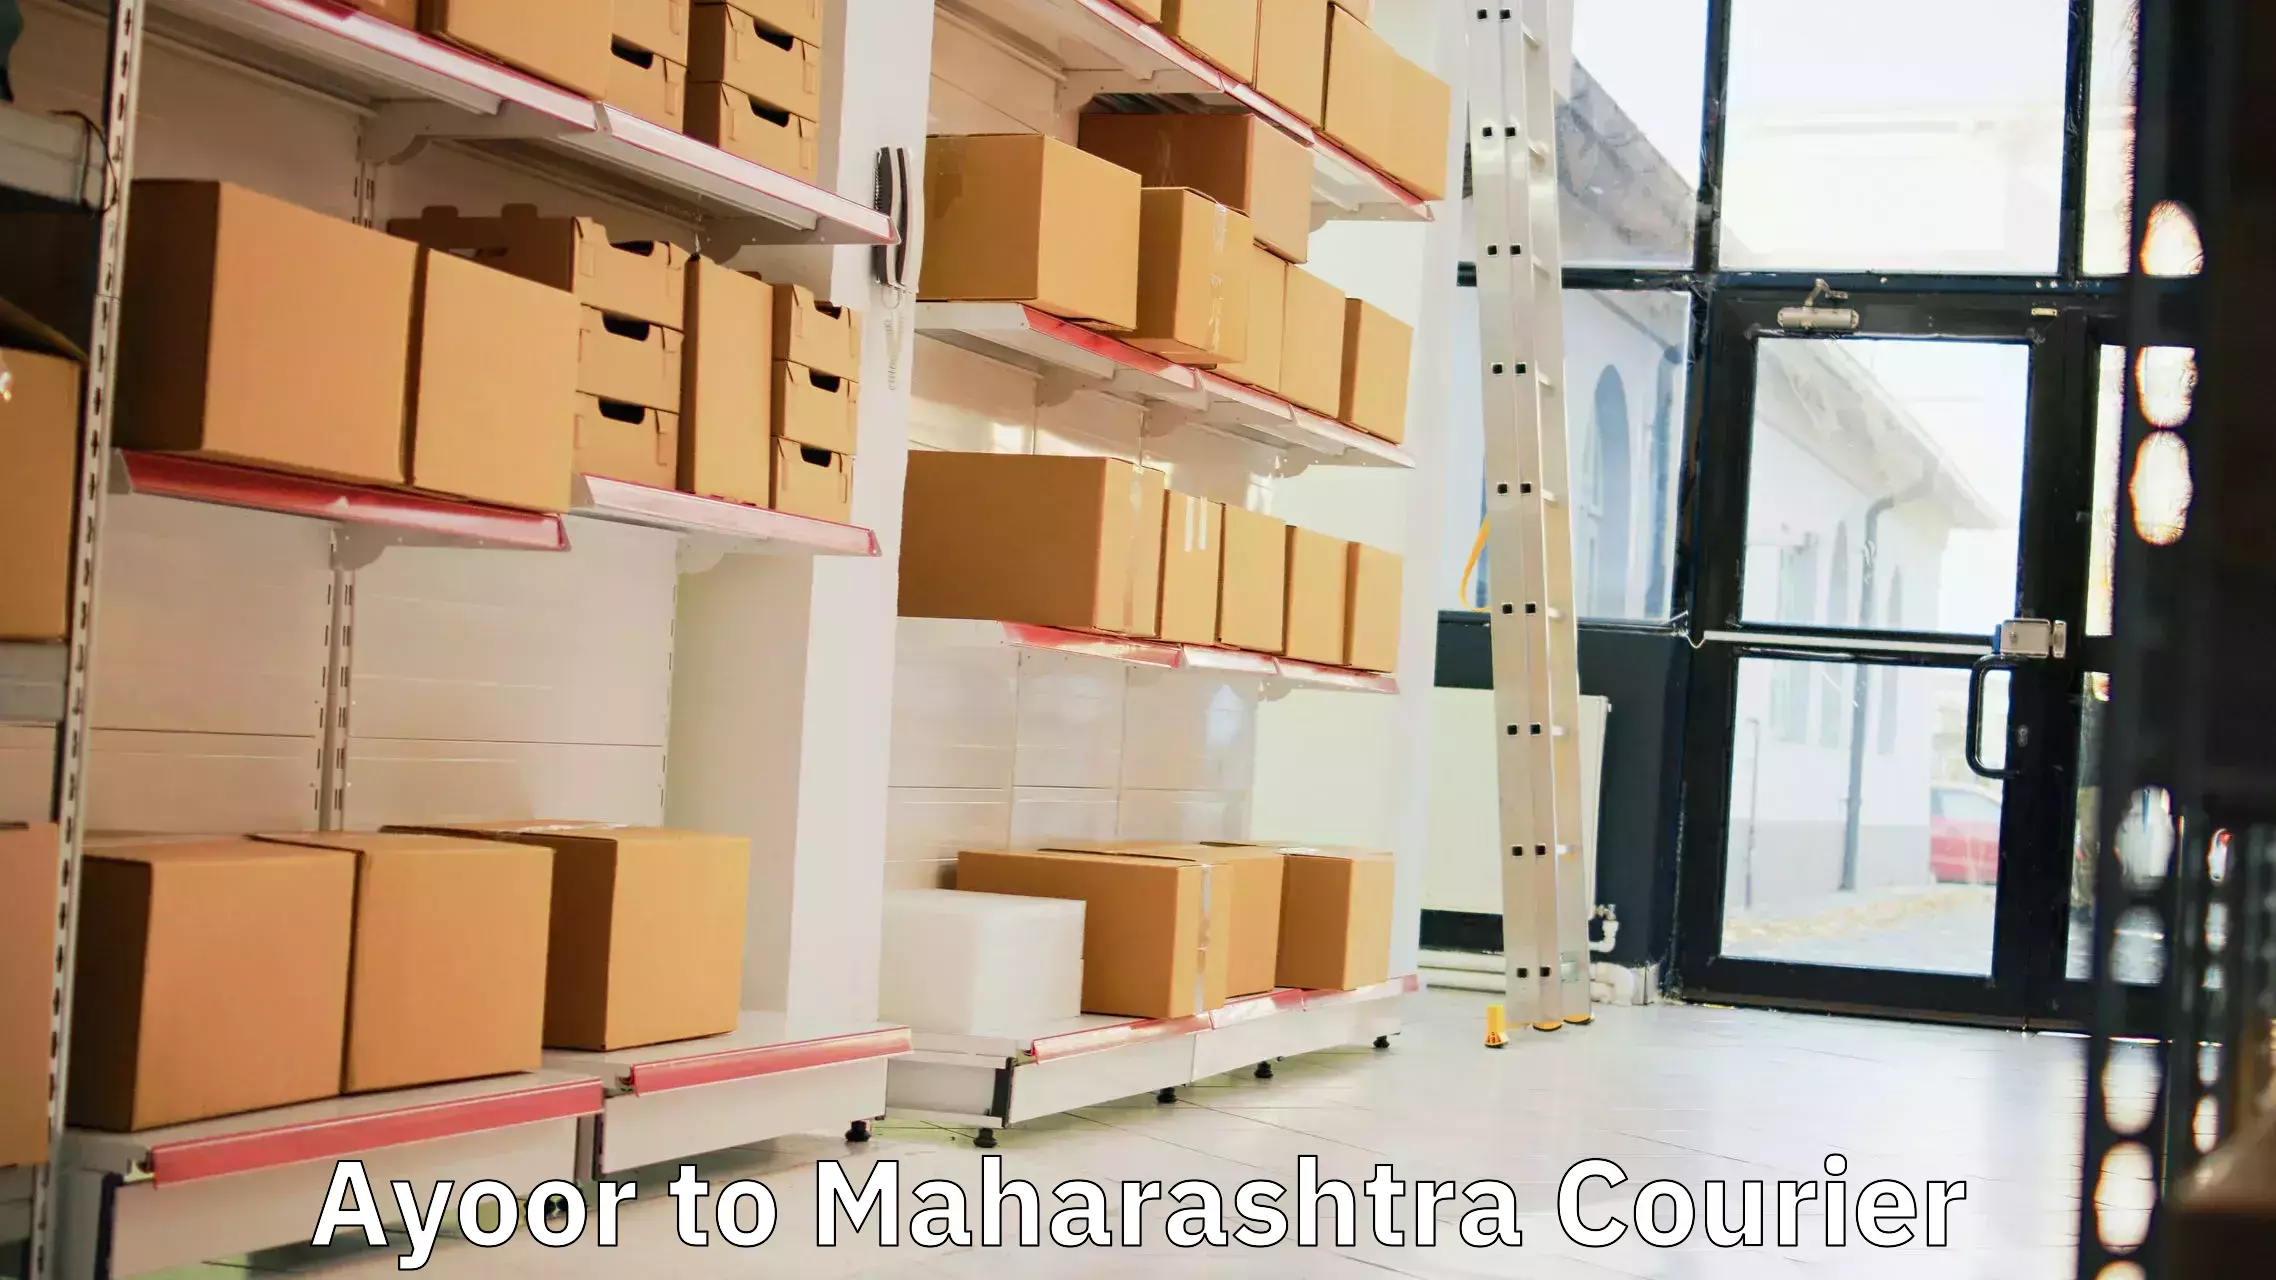 Courier service partnerships Ayoor to Maharashtra